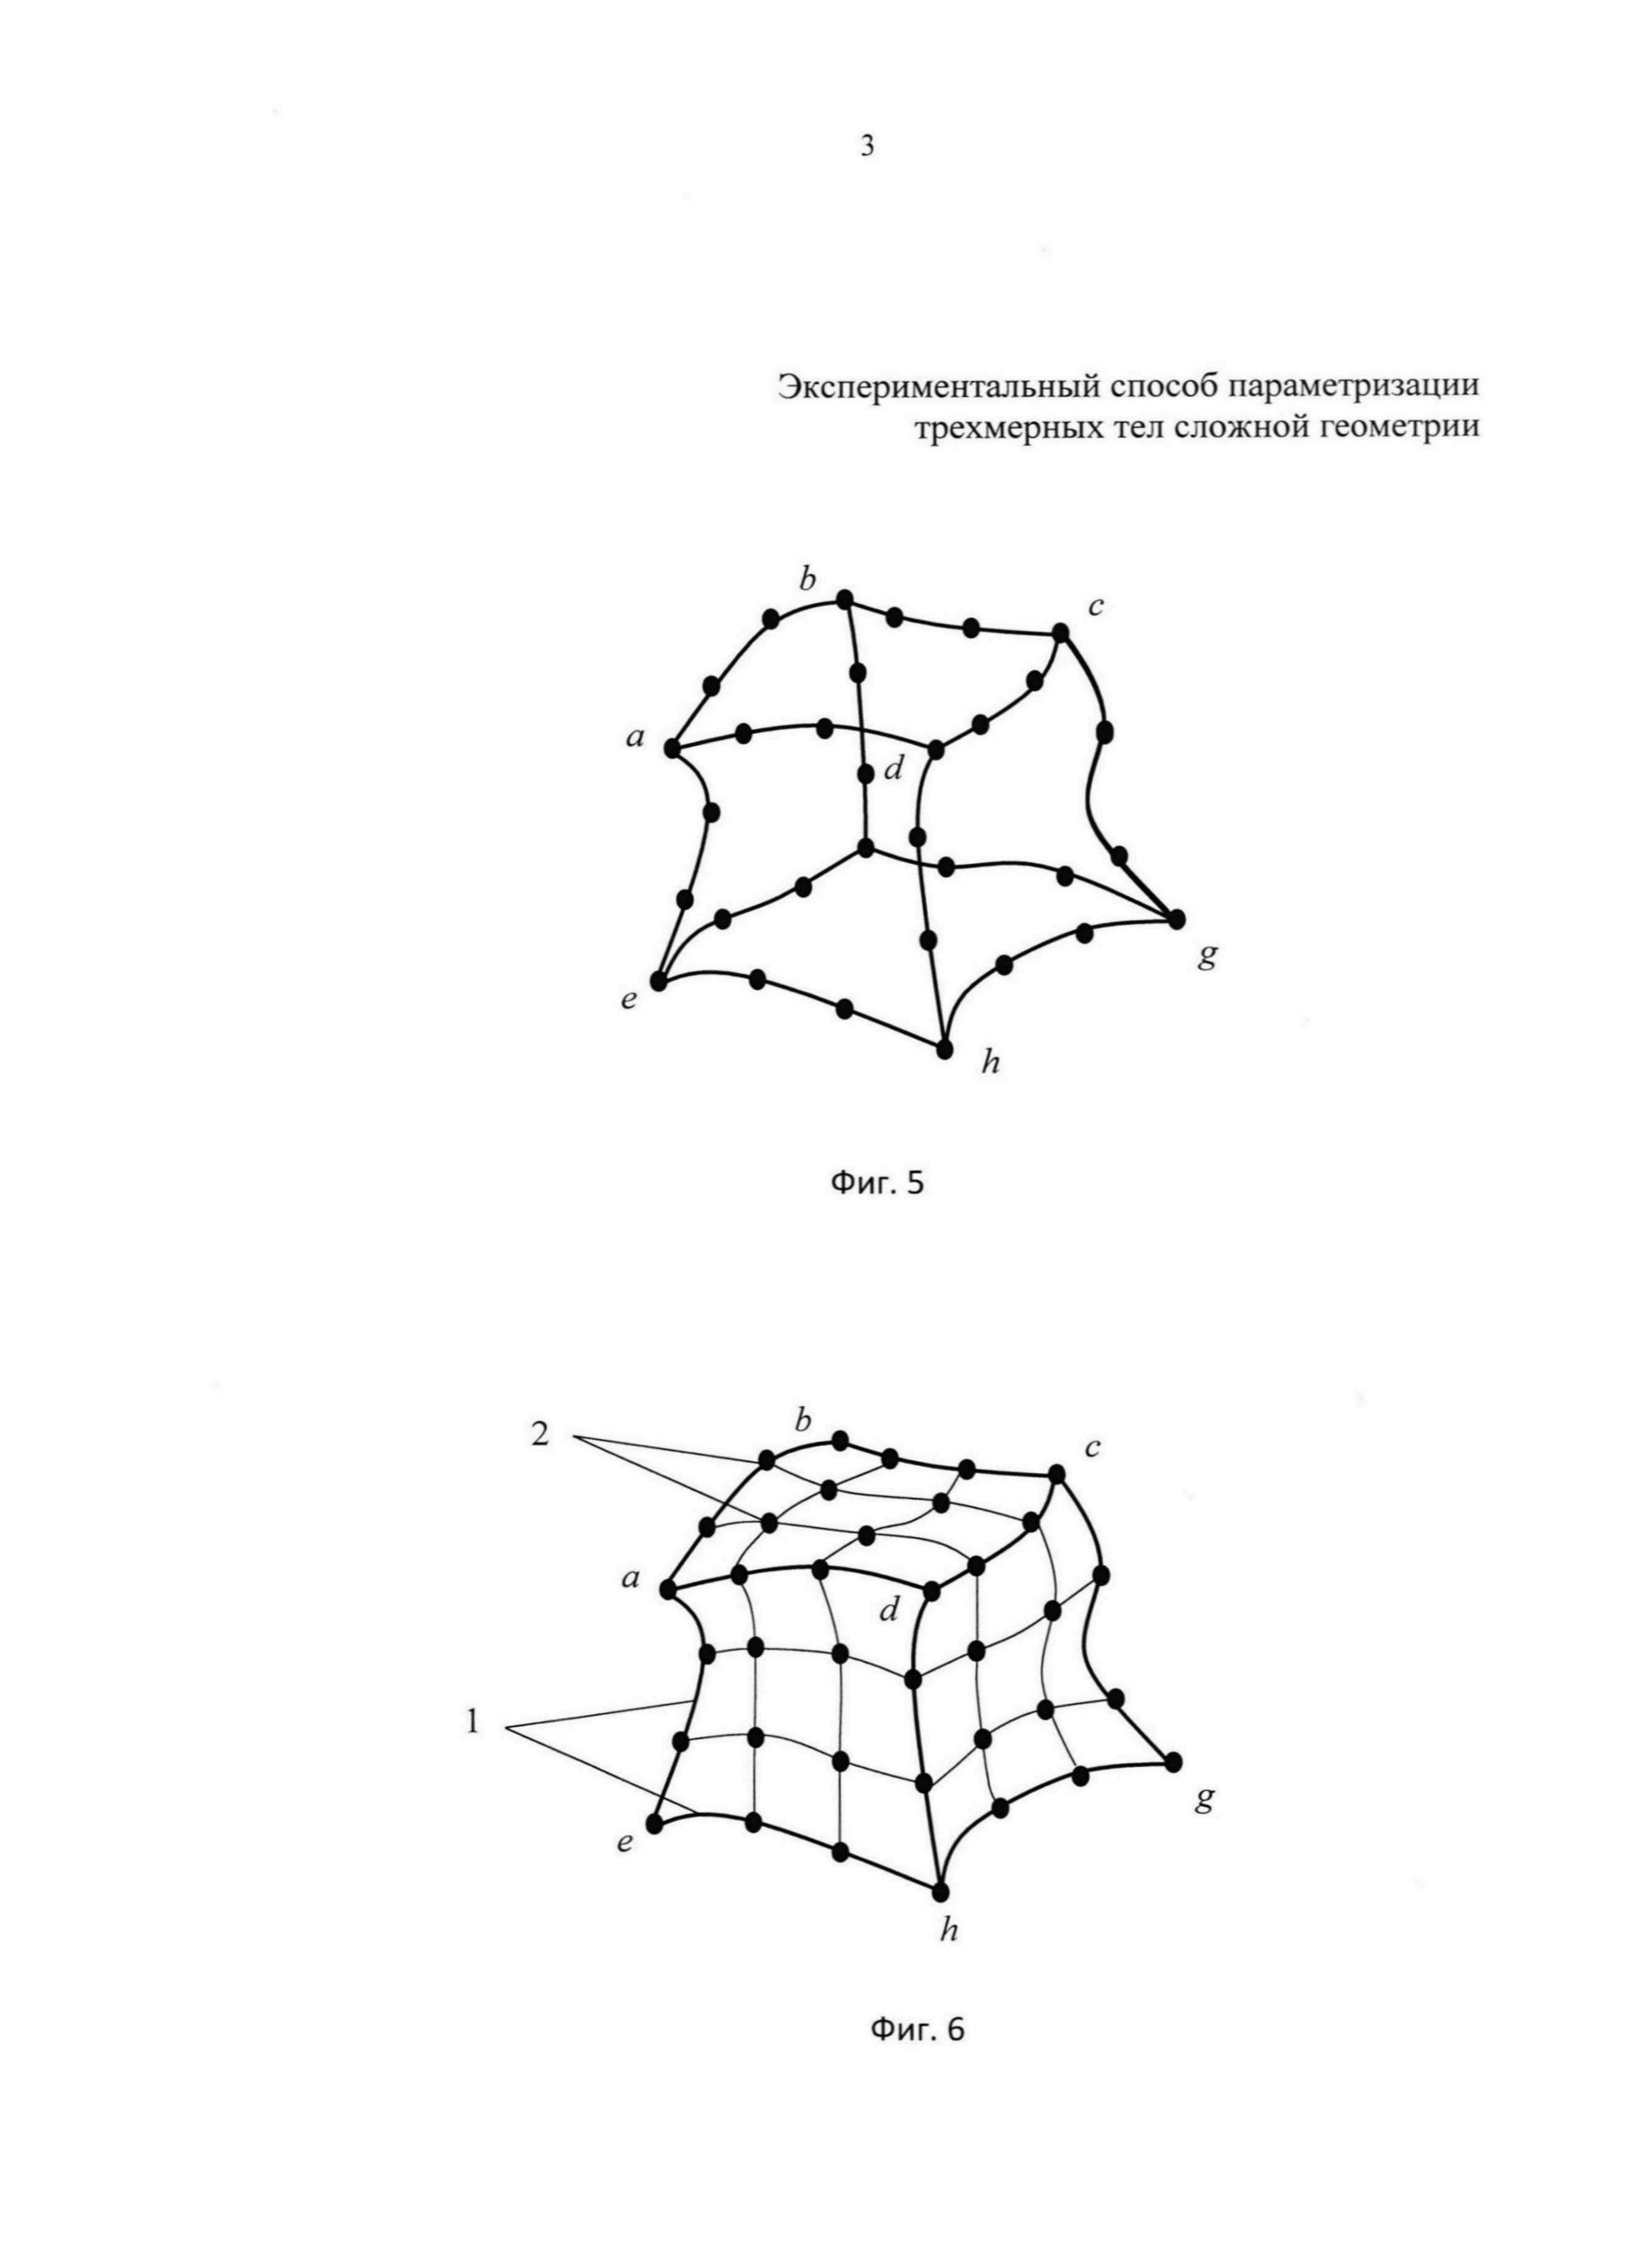 Экспериментальный способ параметризации трехмерных тел сложной геометрии